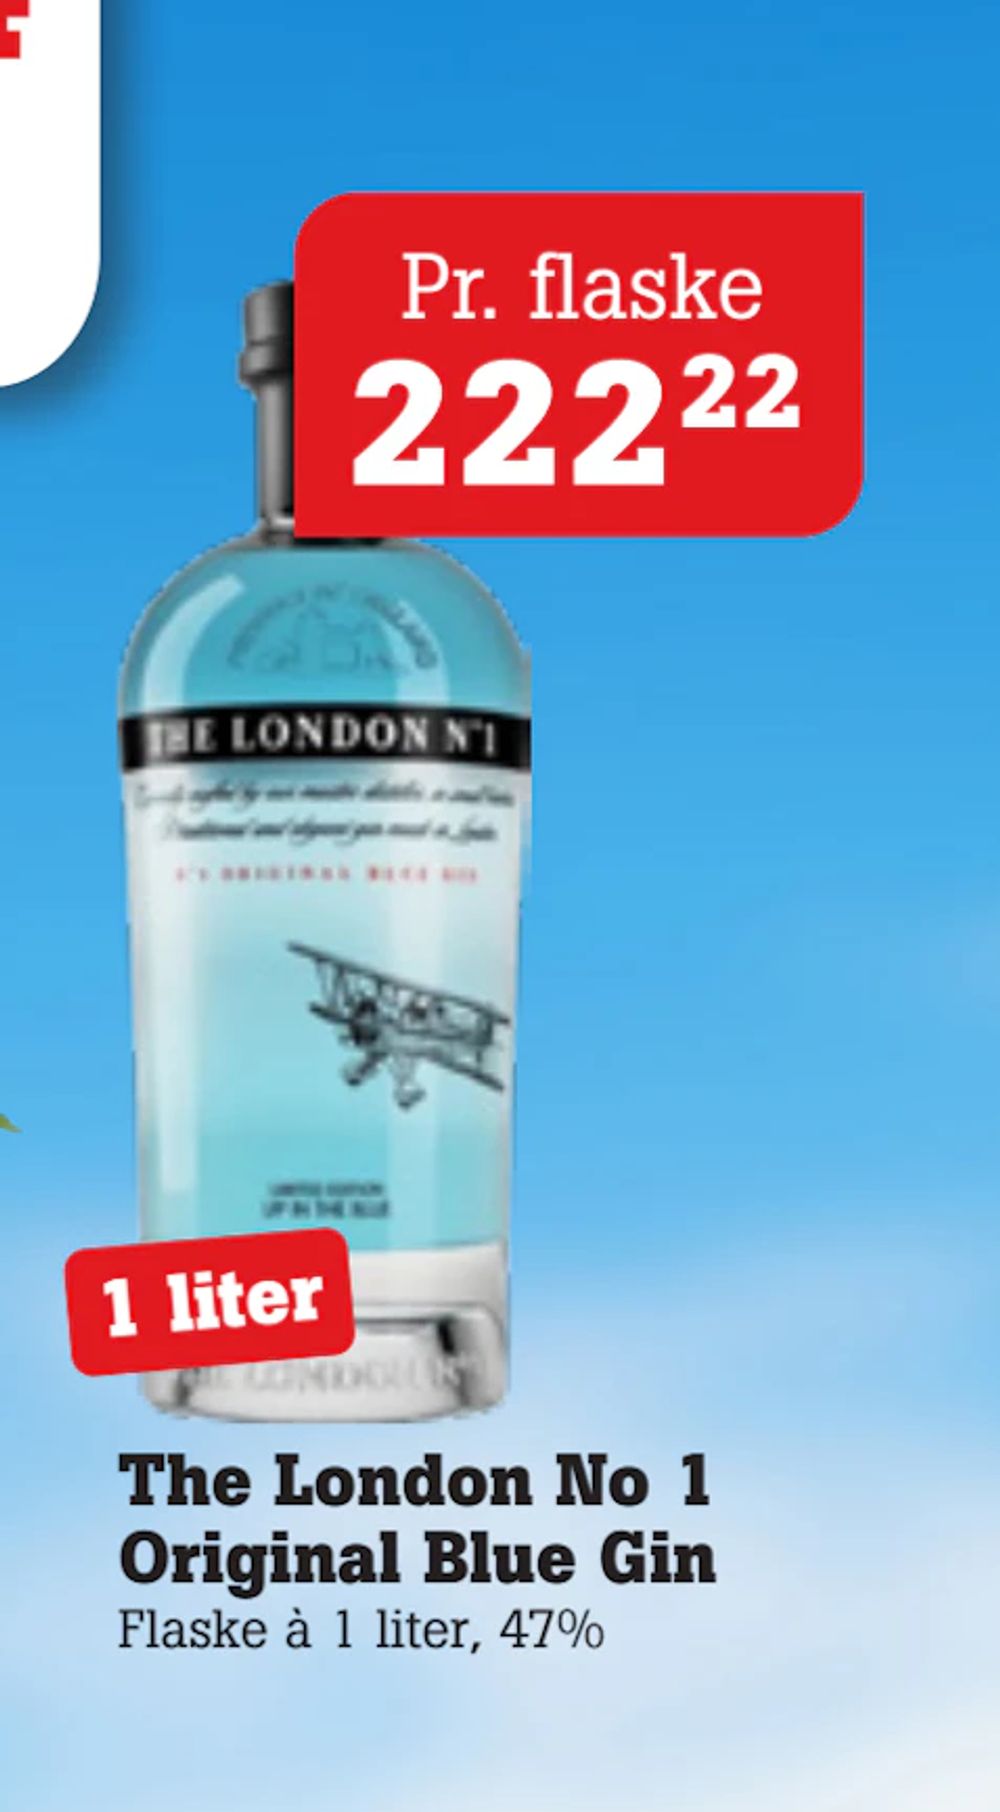 Tilbud på The London No 1 Original Blue Gin fra Poetzsch Padborg til 222,22 kr.